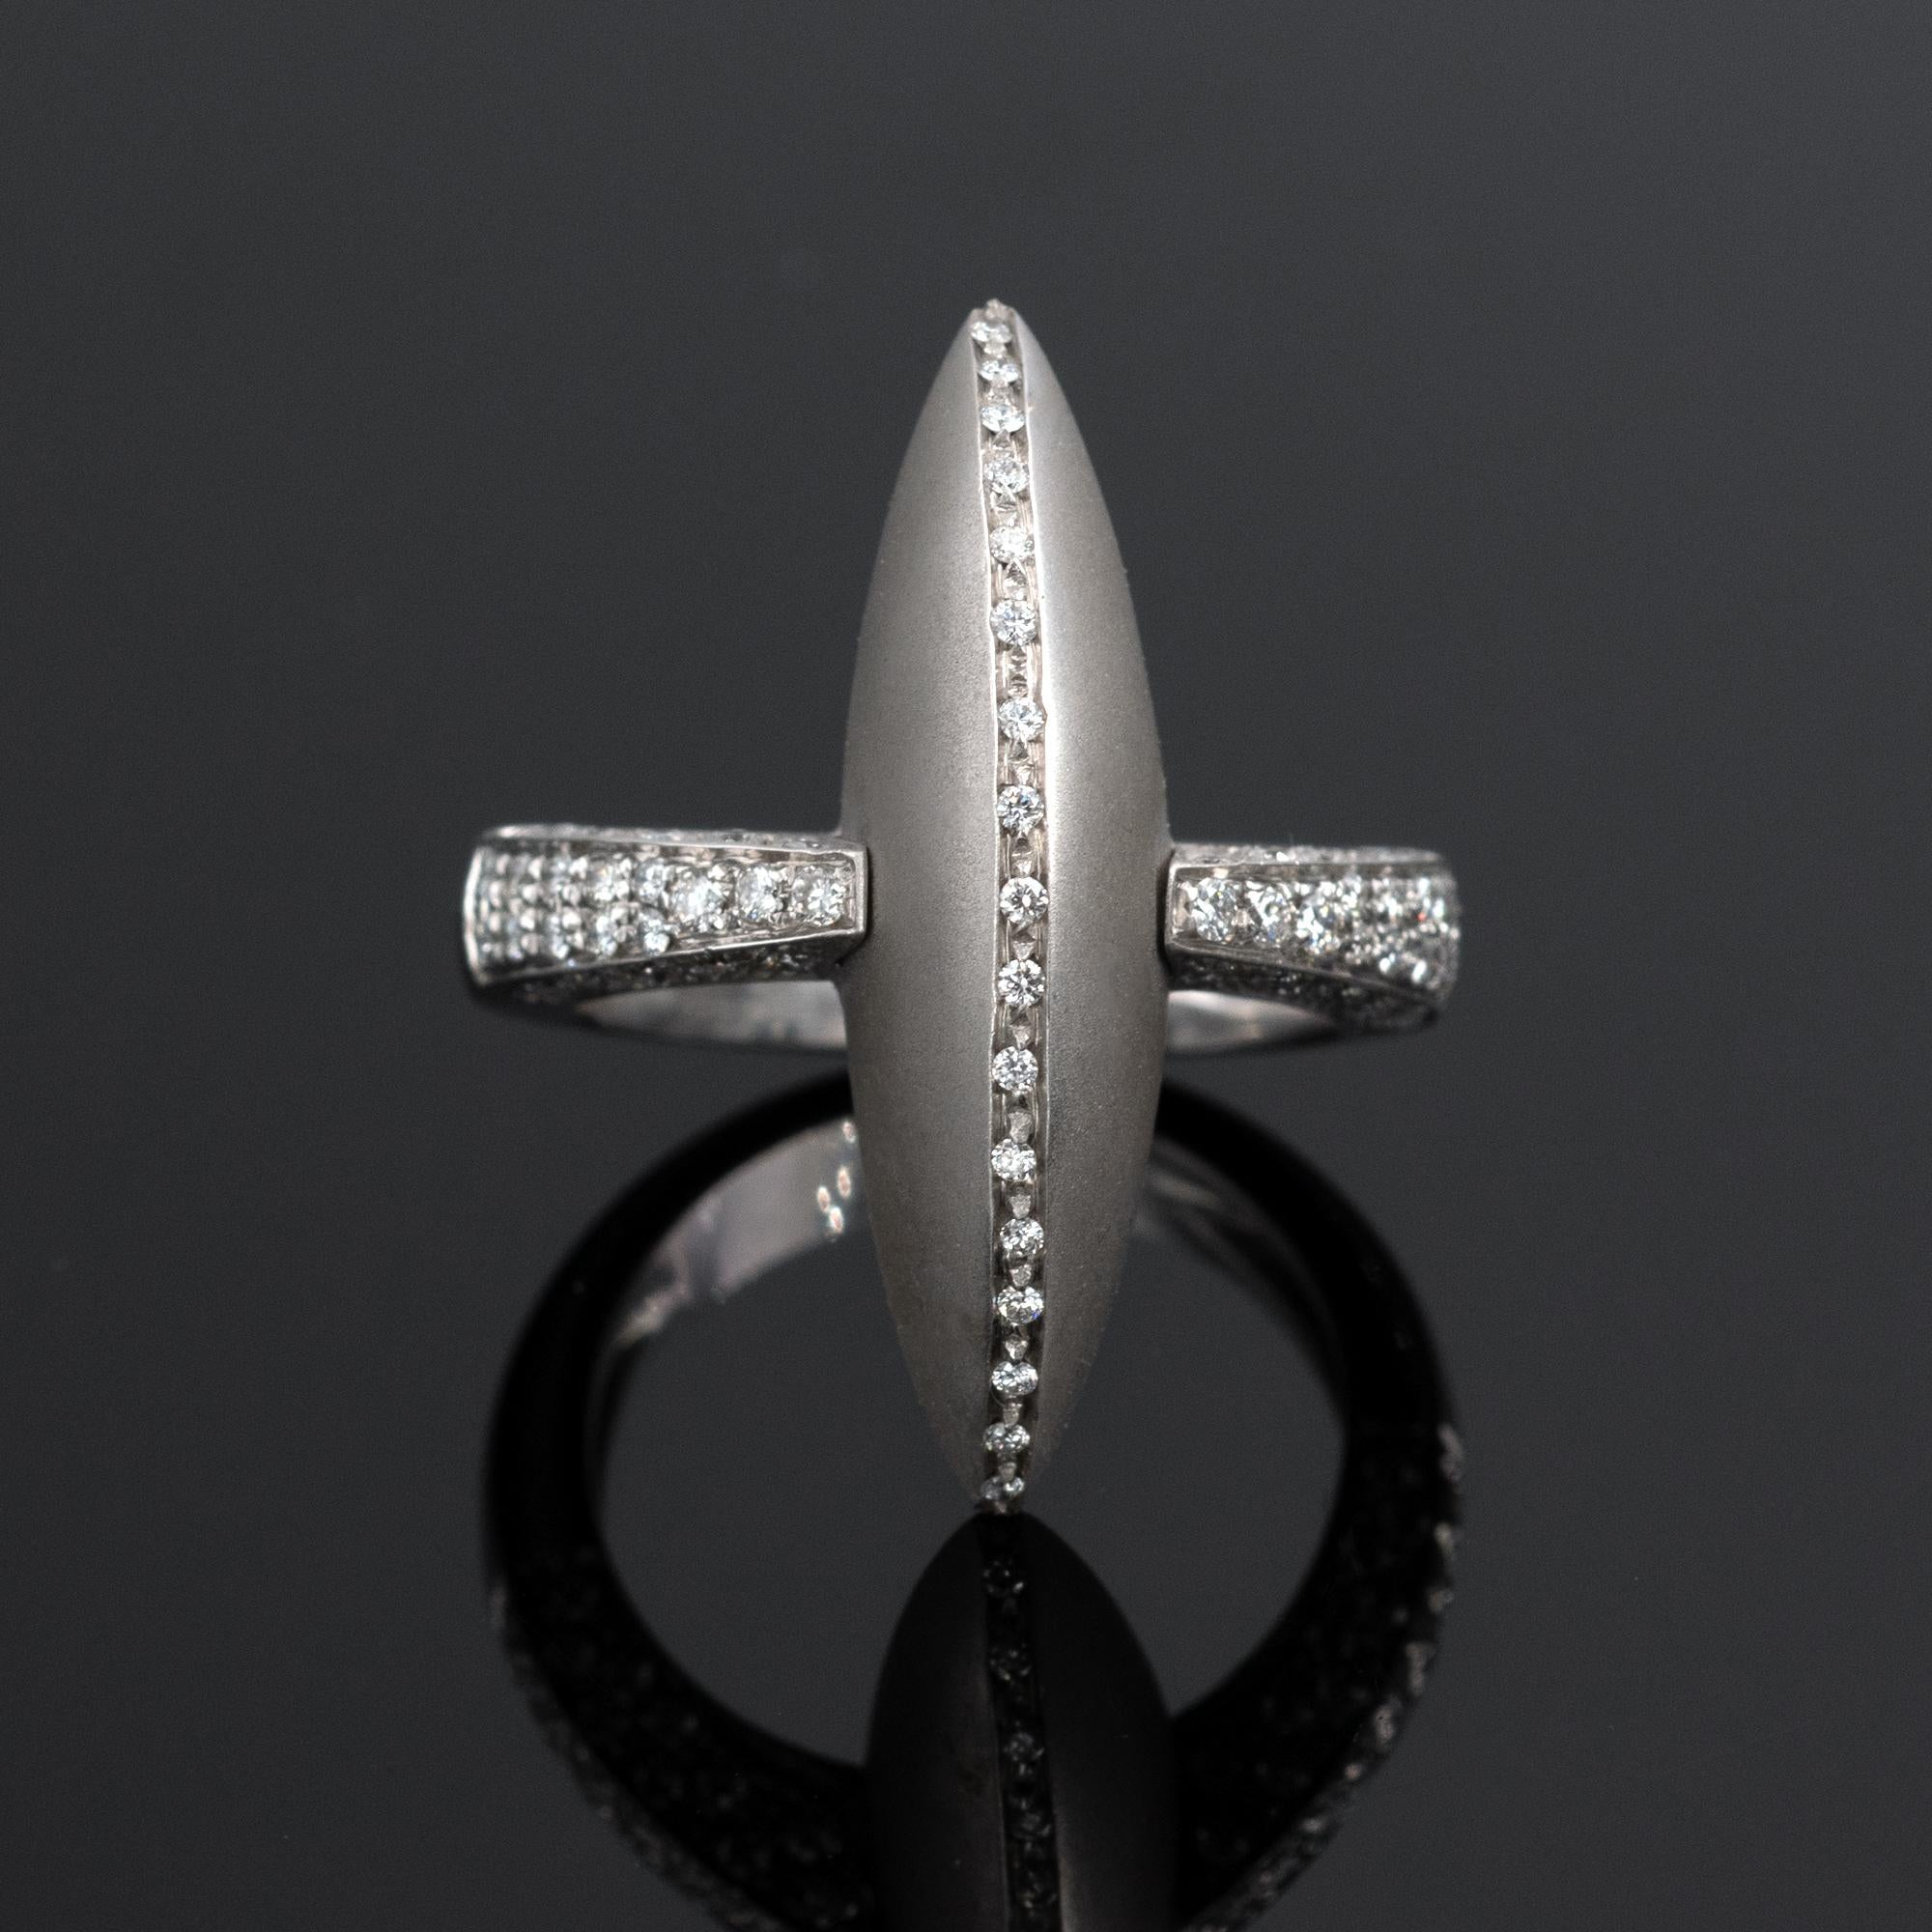 Remarquable bague marquise en forme de dôme, réalisée par le célèbre designer italien Palmiero. Le design contemporain est aussi moderne que parfait : L'or texturé et les diamants sertis en pavé forment un contraste élégant.
Diamants : 0,52 carat. 
 